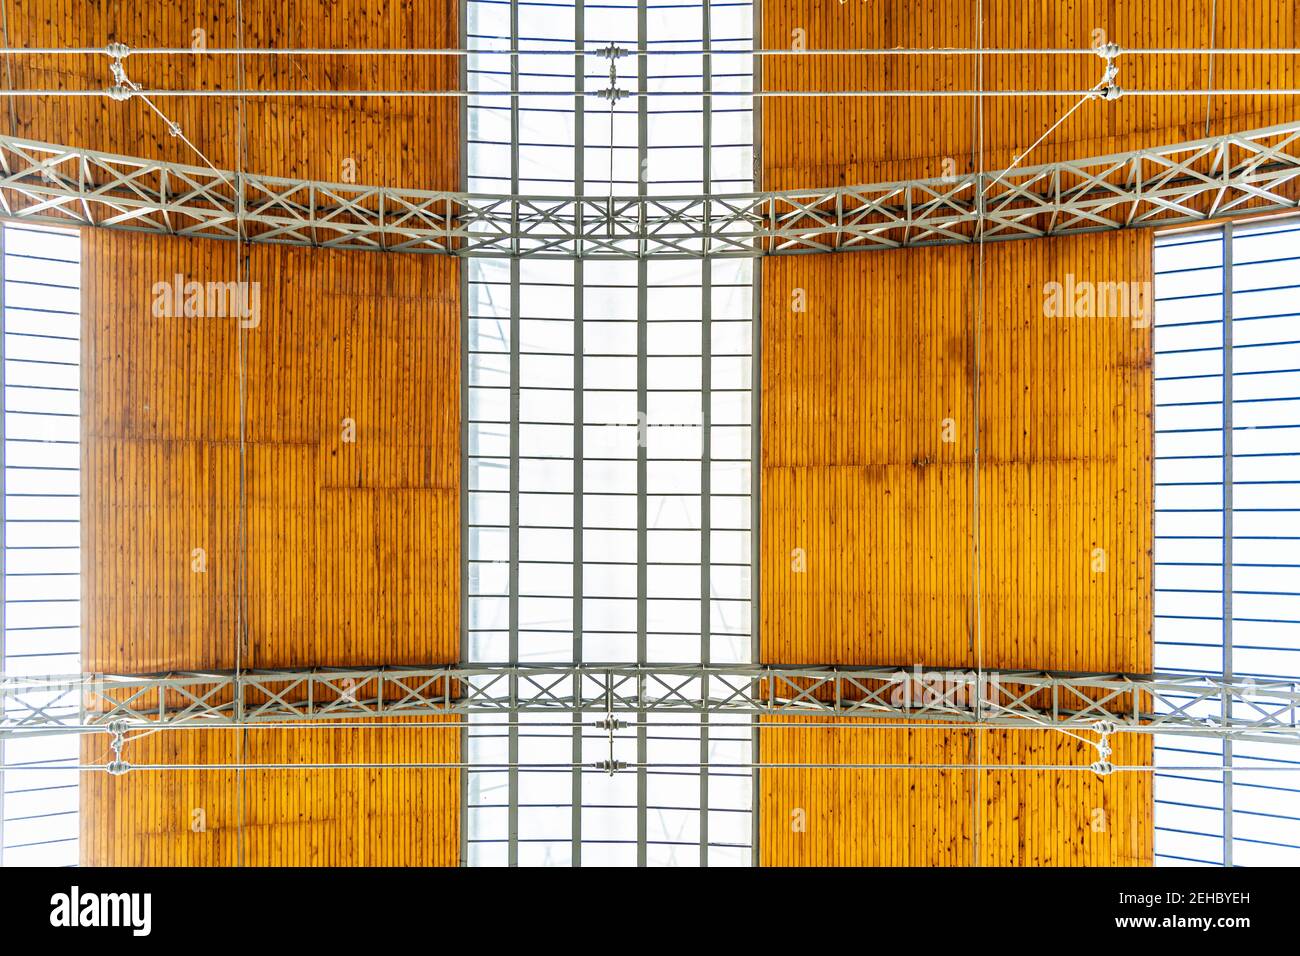 Holz- und Glasdecke des riesigen Hallengebäudes Stockfoto